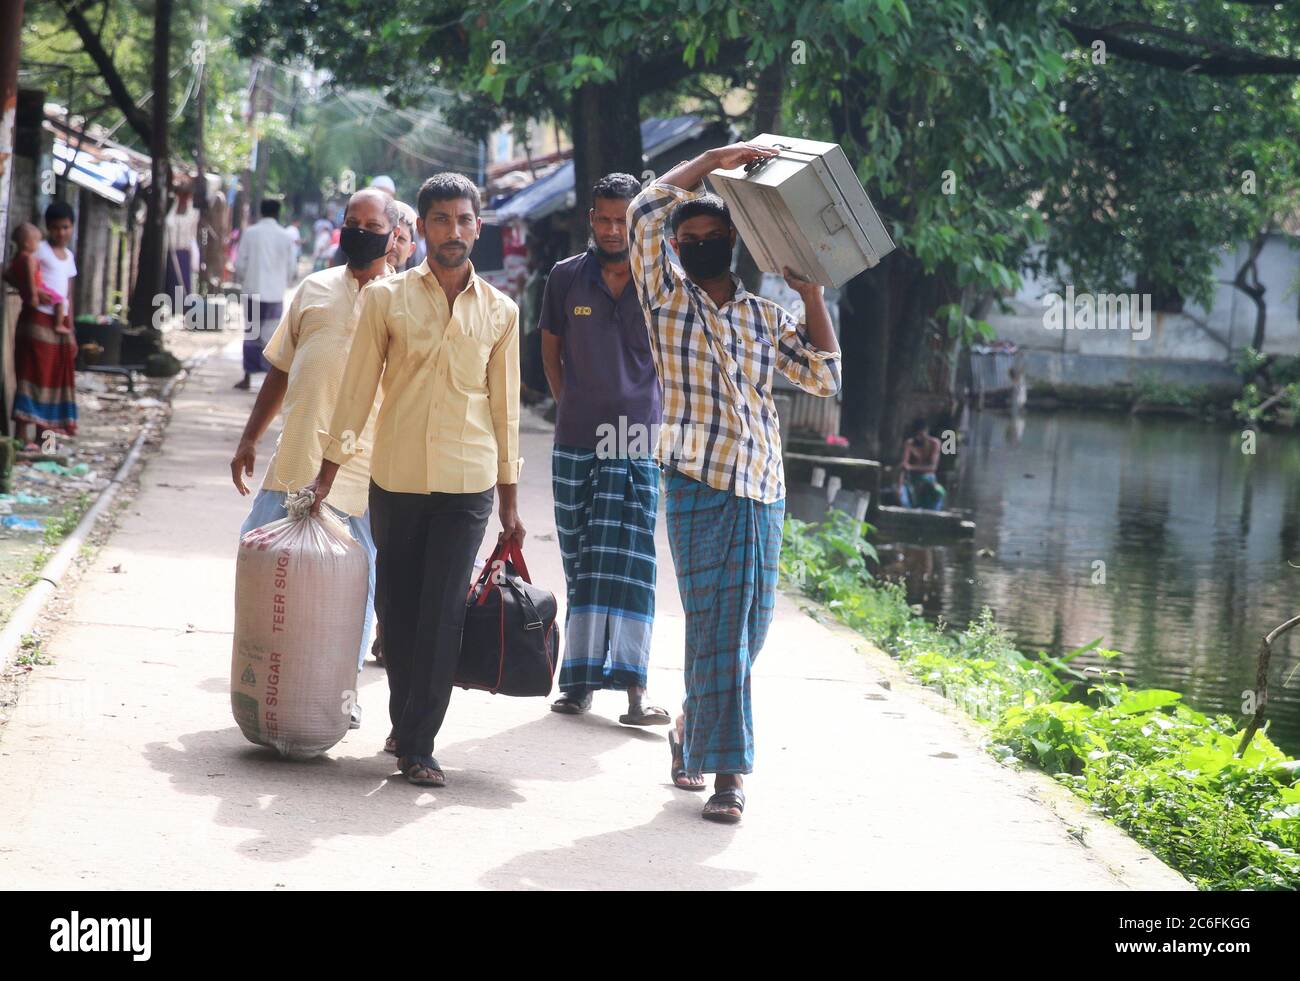 Dhaka, Bangladesh. 9 juillet 2020. Les employés qui quittent l'usine de jute Latif Bawany avec leurs bagages en tant qu'employés de l'usine de jute appartenant à l'État sont licenciés.le gouvernement a décidé d'envoyer 25,000 employés des usines de jute appartenant à l'État en retraite volontaire anticipée afin de réduire les pertes subies au cours des dernières années. Les travailleurs seront mis à la retraite par le biais du régime de poignée de main d'or, la disposition d'un contrat d'emploi qui stipule que l'employeur fournira une indemnité de départ importante si l'employé est mis à pied. Crédit: Sultan Mahmud Mukut/SOPA Images/ZUMA Wire/Alay Live News Banque D'Images